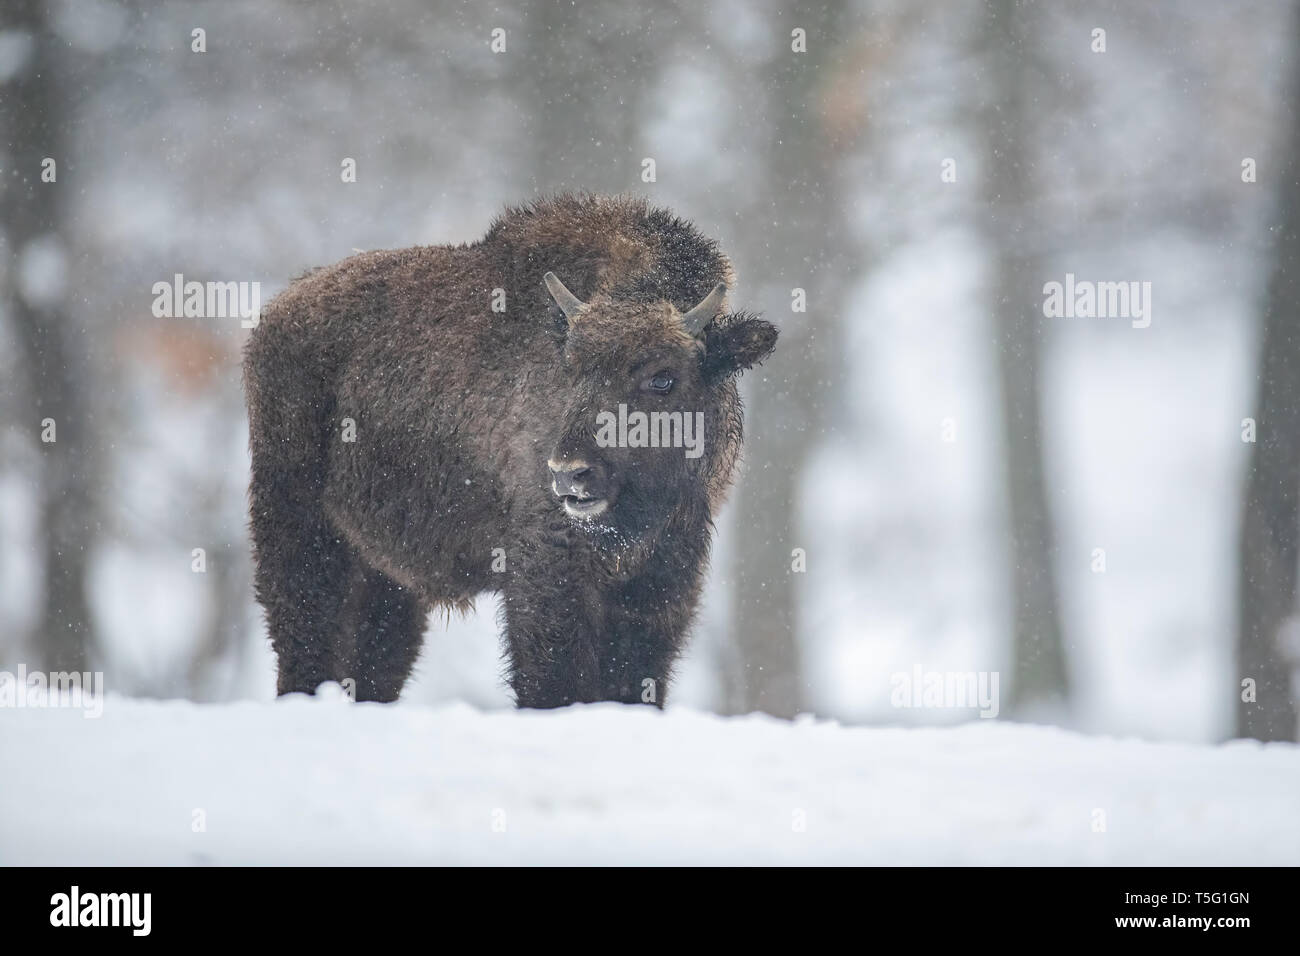 Bison d'Europe, le bison bonasus, dans la forêt avec de la neige. Banque D'Images